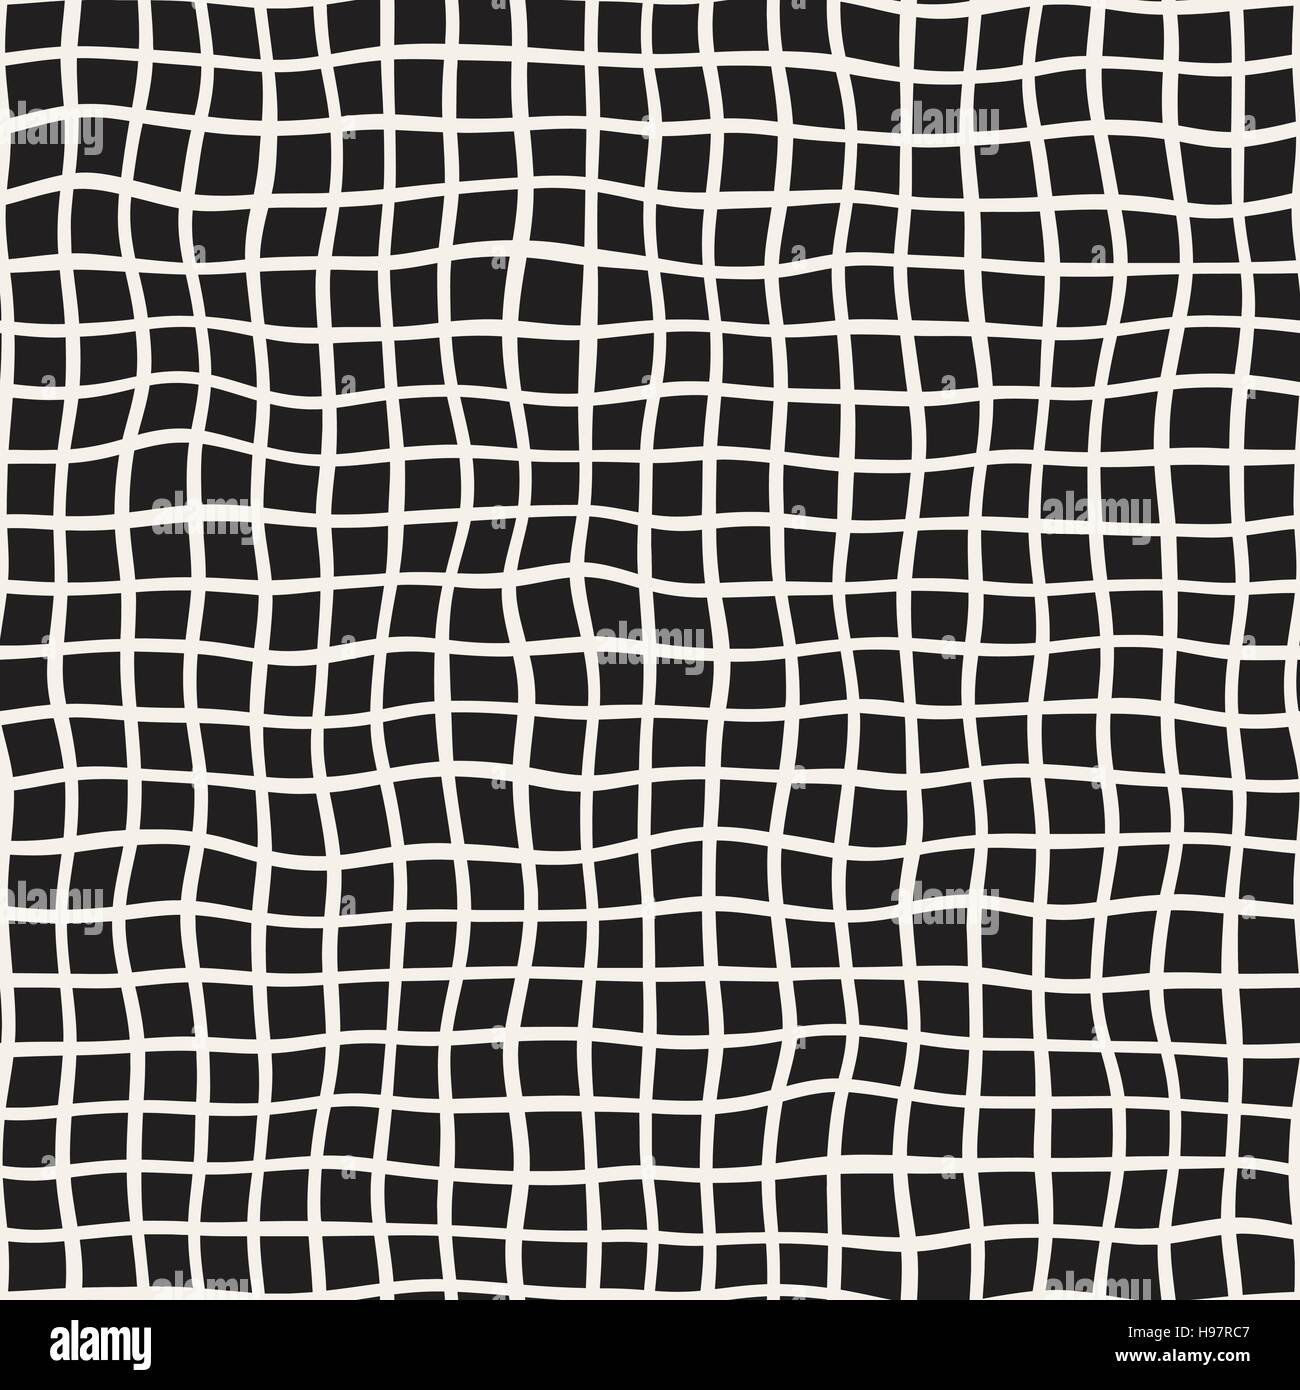 Wellig Hand gezeichnete Linien Quadrat Raster. Vektormuster nahtlos schwarz und weiß. Stock Vektor